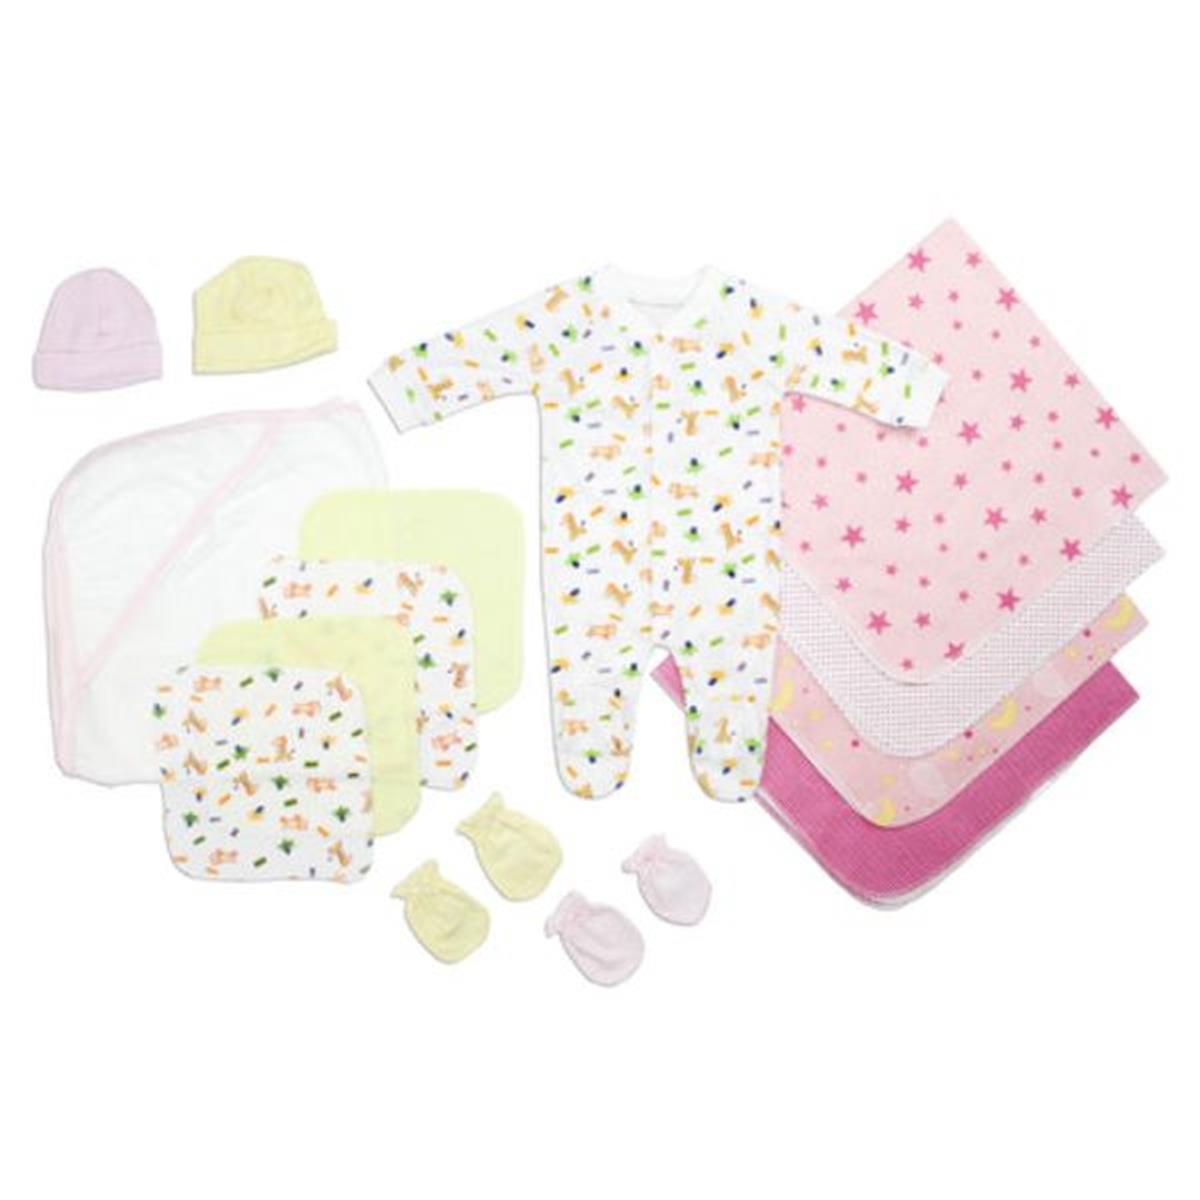 Bambini LS-0099 Newborn Baby Girls Layette Baby Shower Gift Set&#44; White & Pink - Newborn